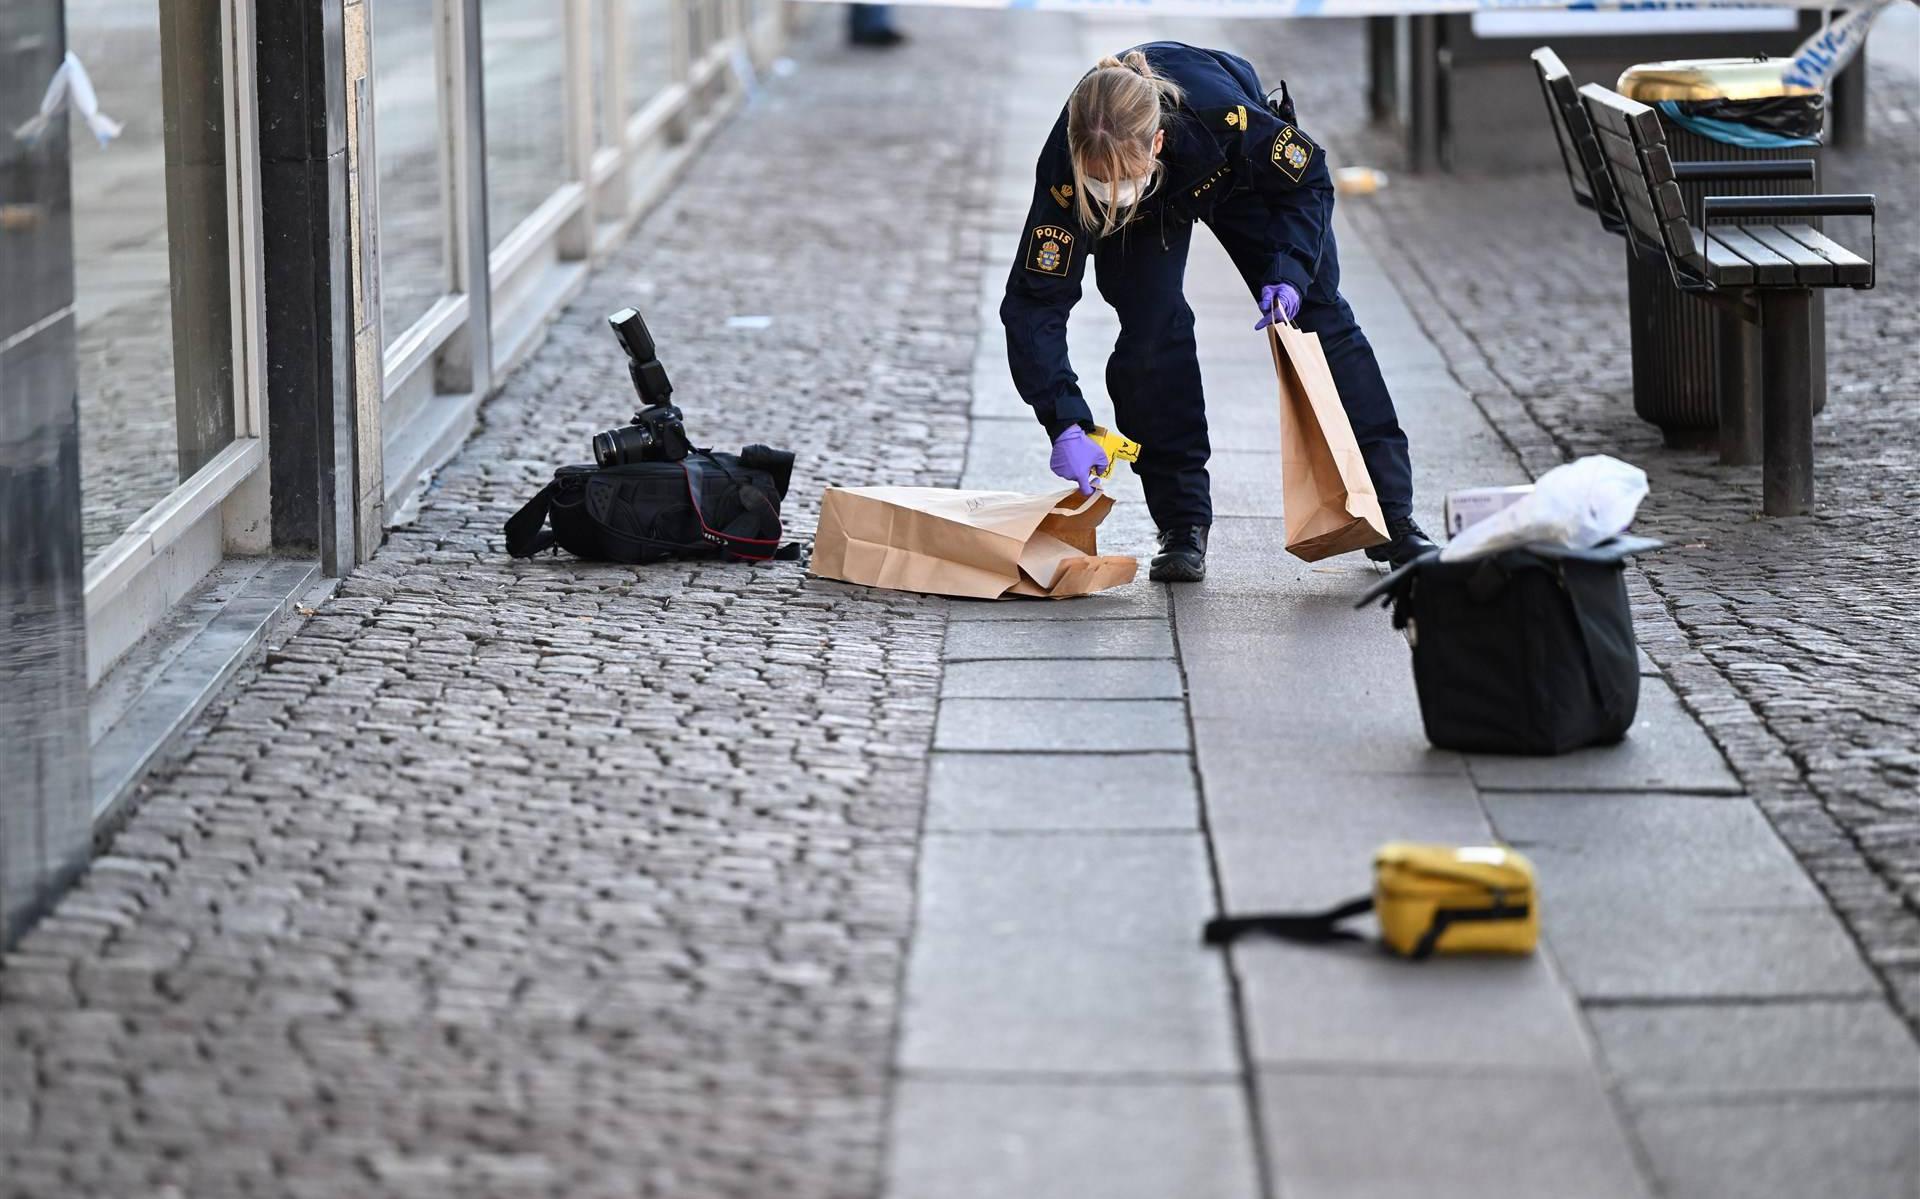 Neersteken meisje (10) in Zweden waarschijnlijk geen terrorisme